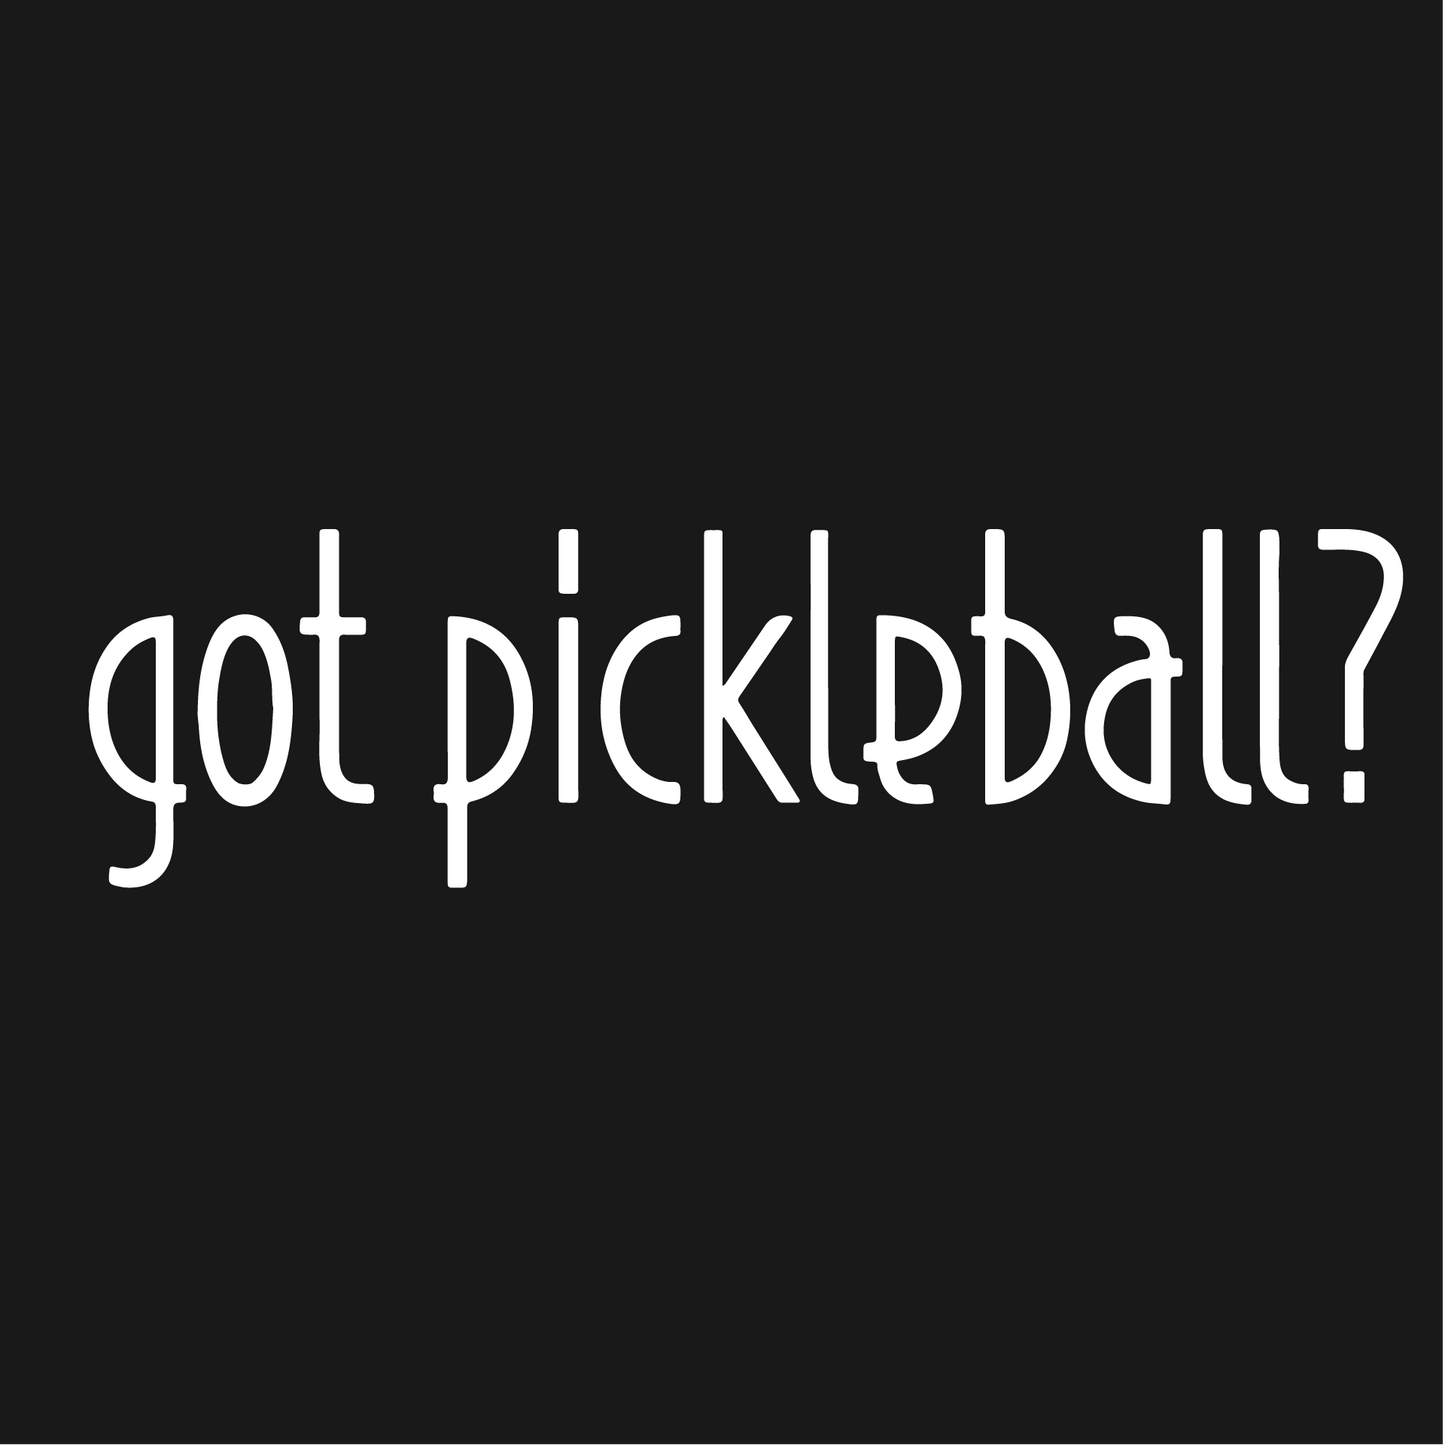 Got Pickleball? | Women's Pickleball Skort